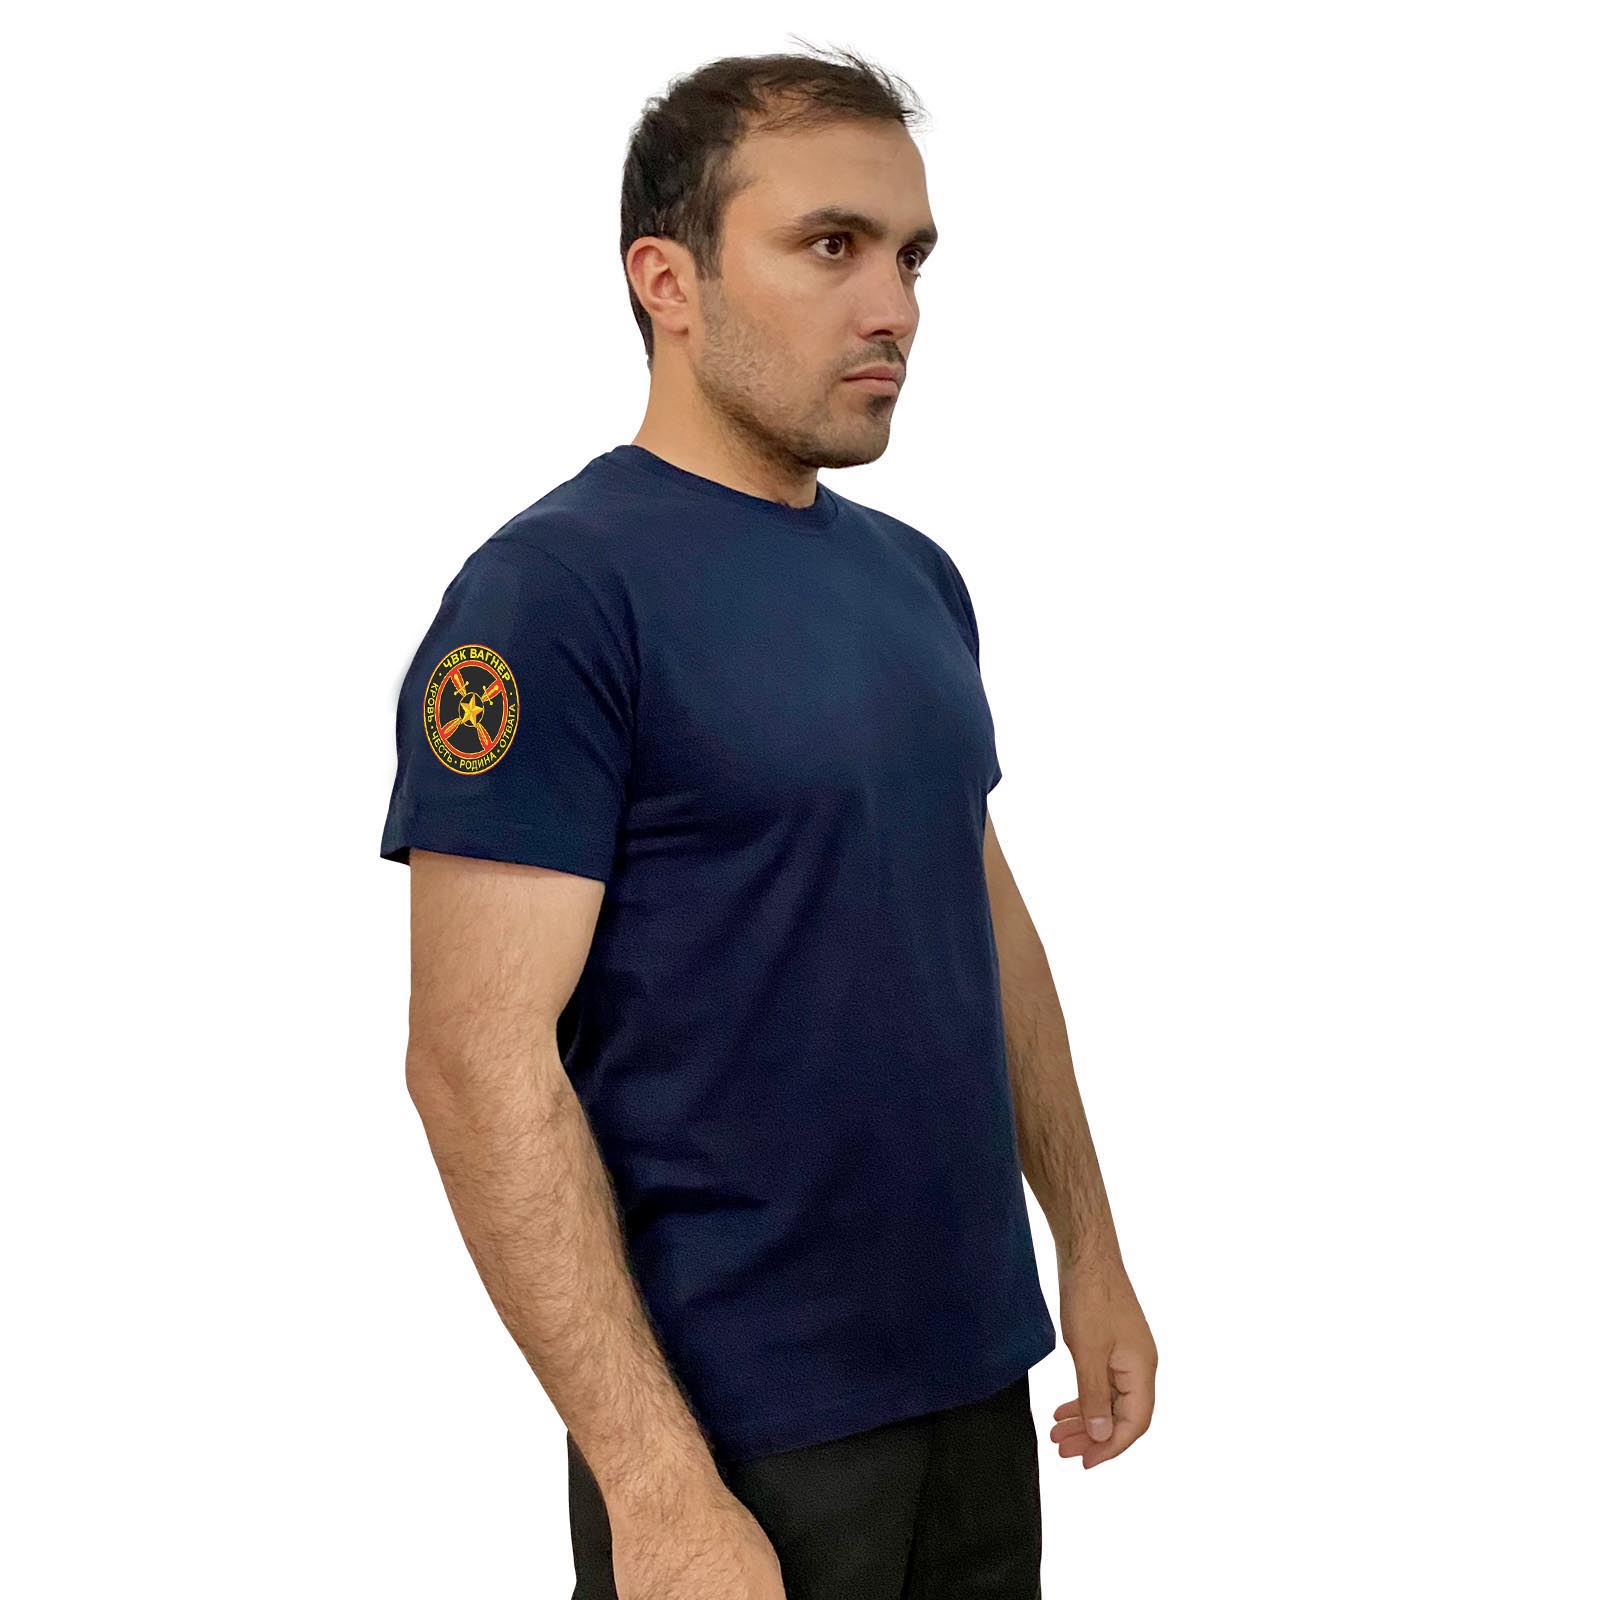 Купить мужскую синюю футболку с термонаклейкой ЧВК Вагнер онлайн